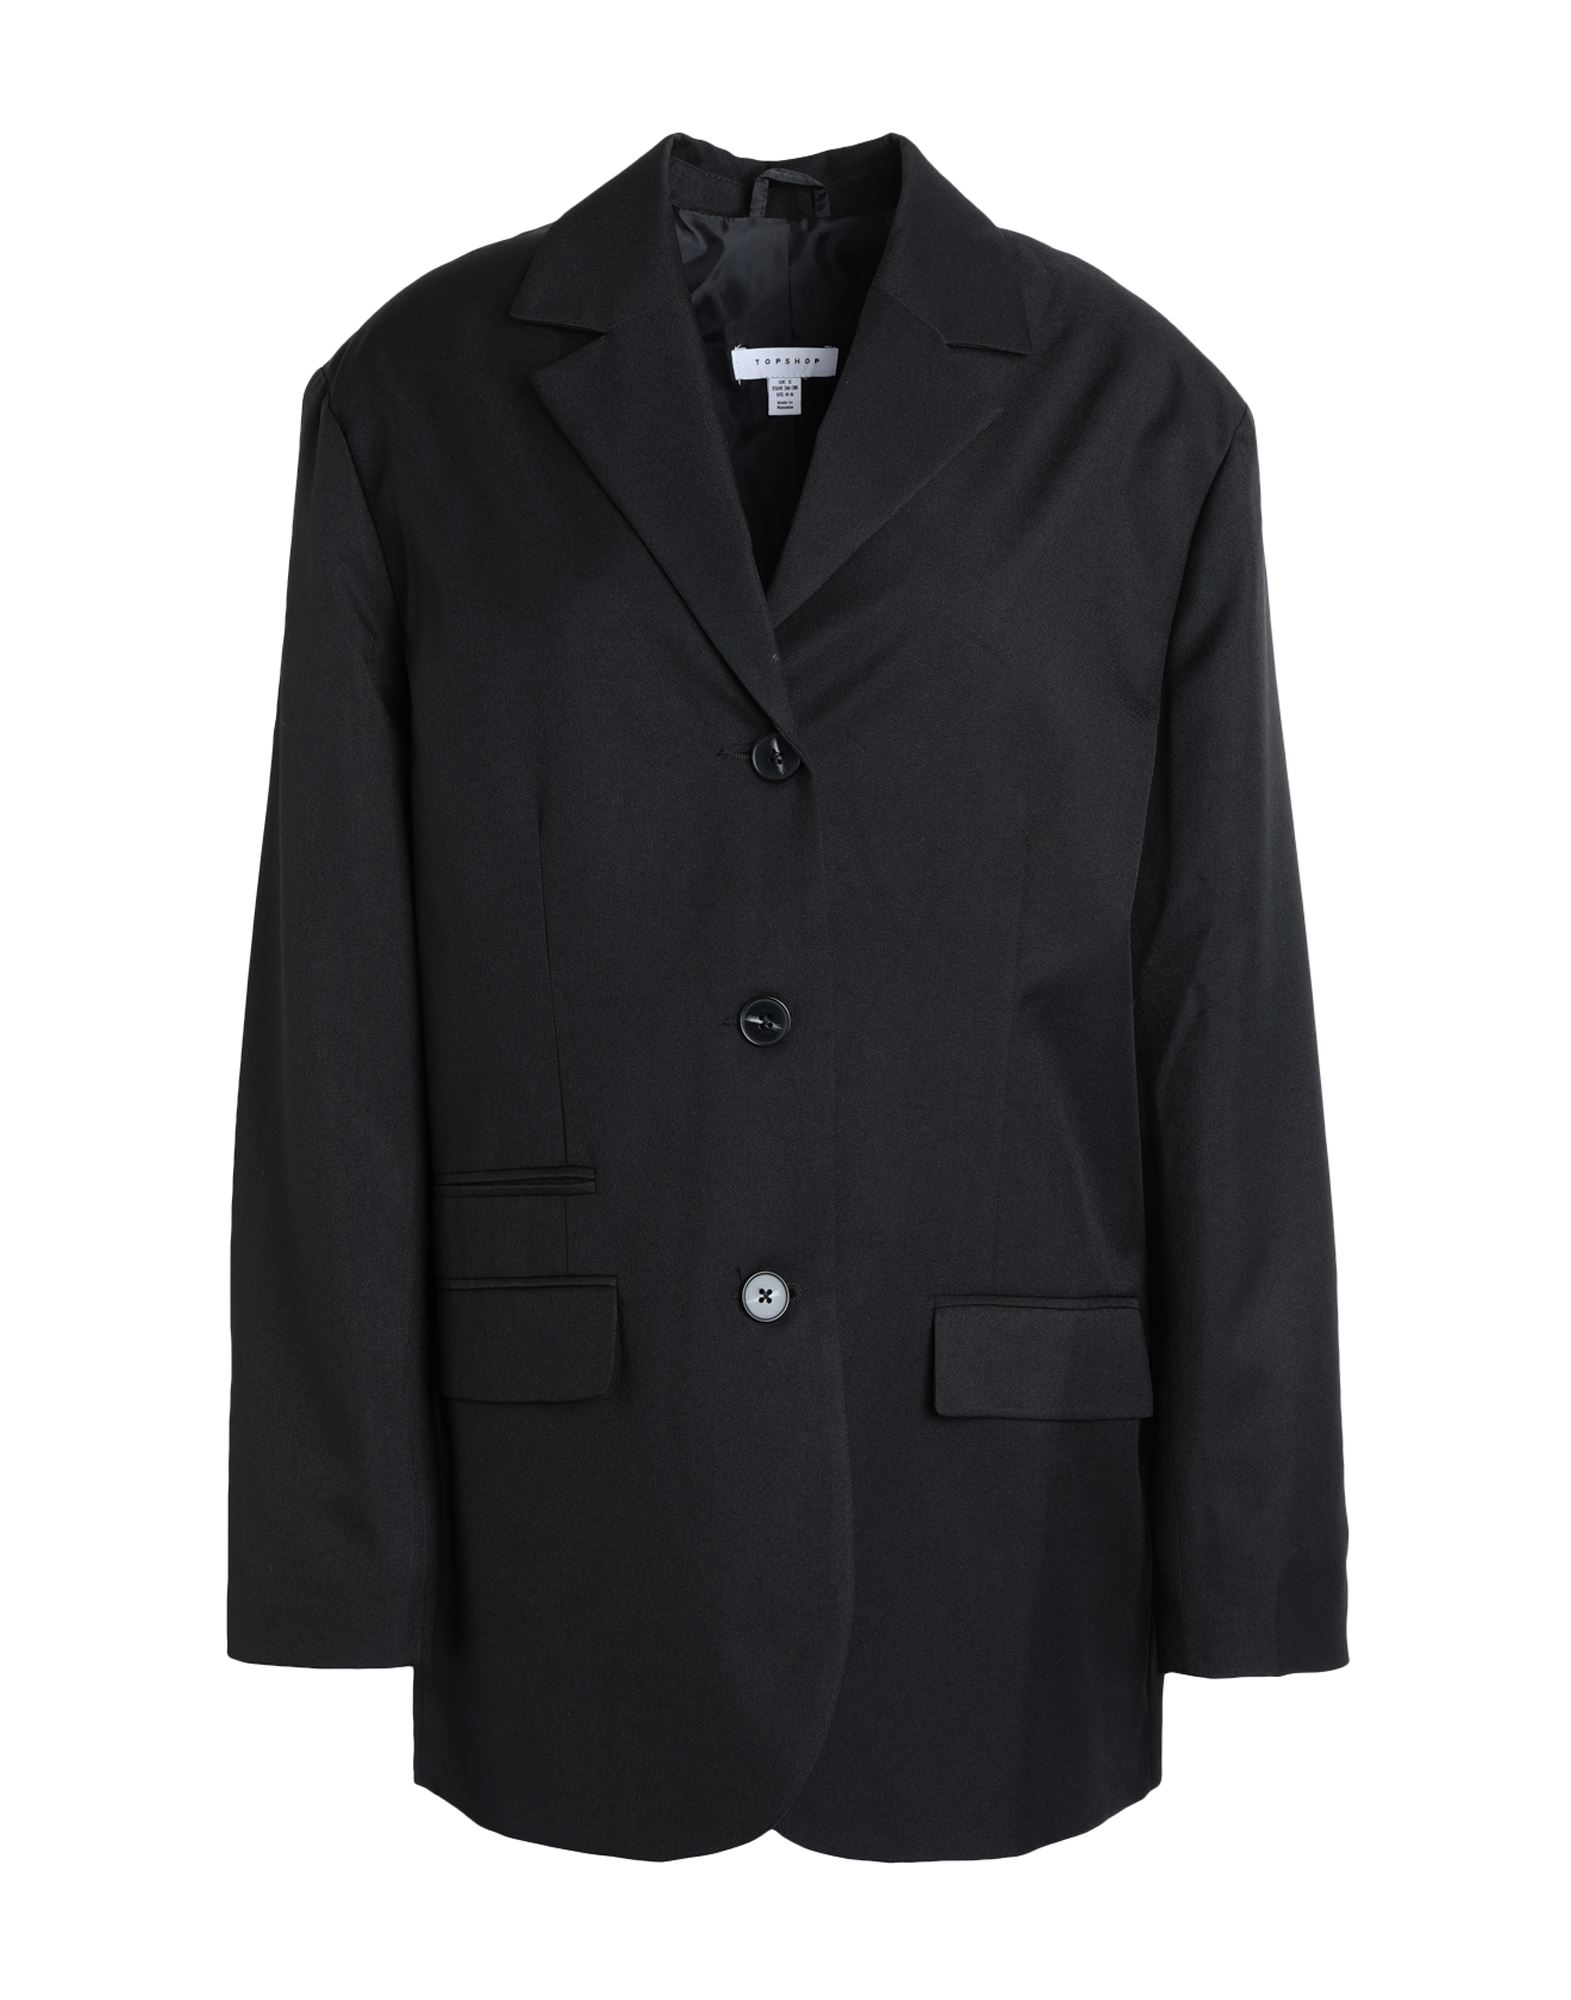 Topshop Woman Suit Jacket Black Size L Polyester